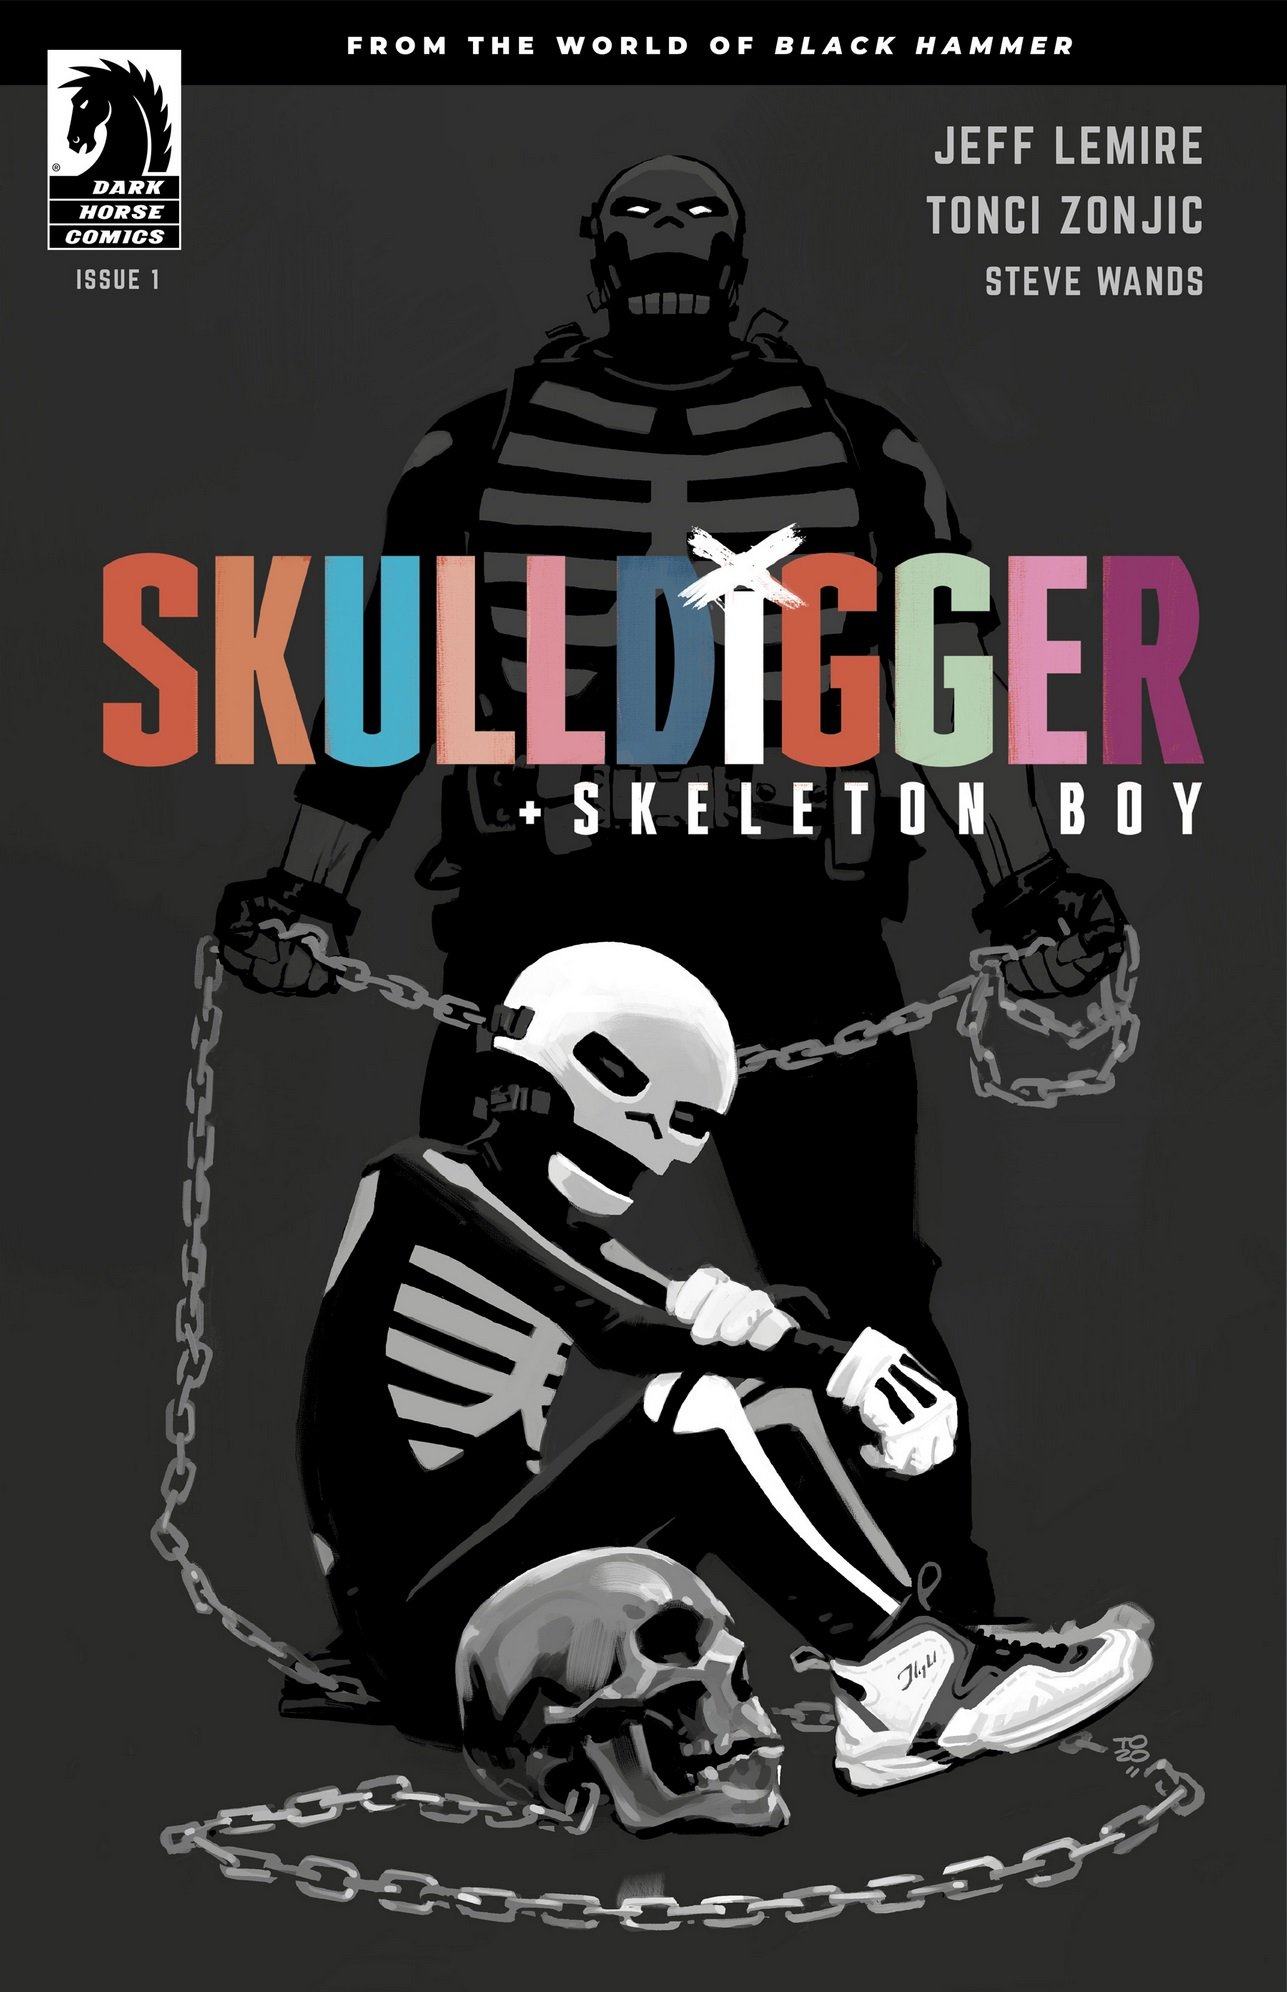 Skulldigger + Skeleton Boy #1 (2019)